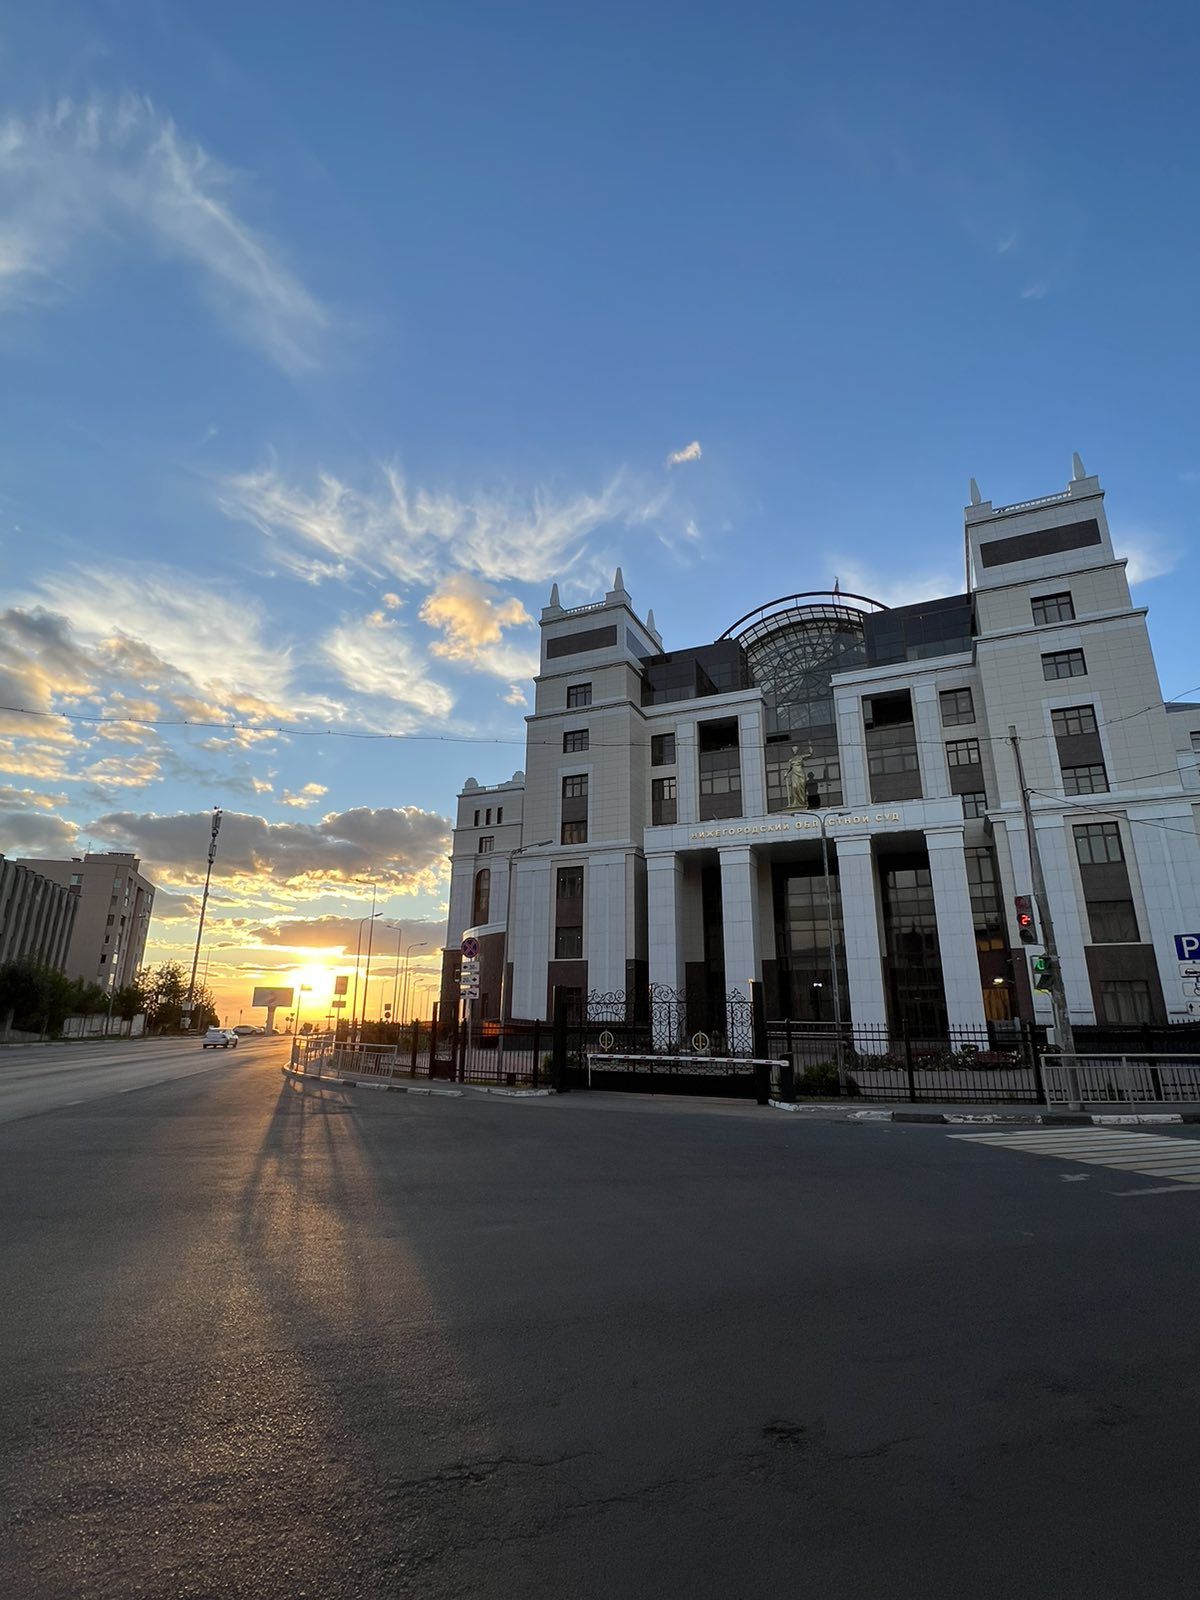 Нижегородский областной суд